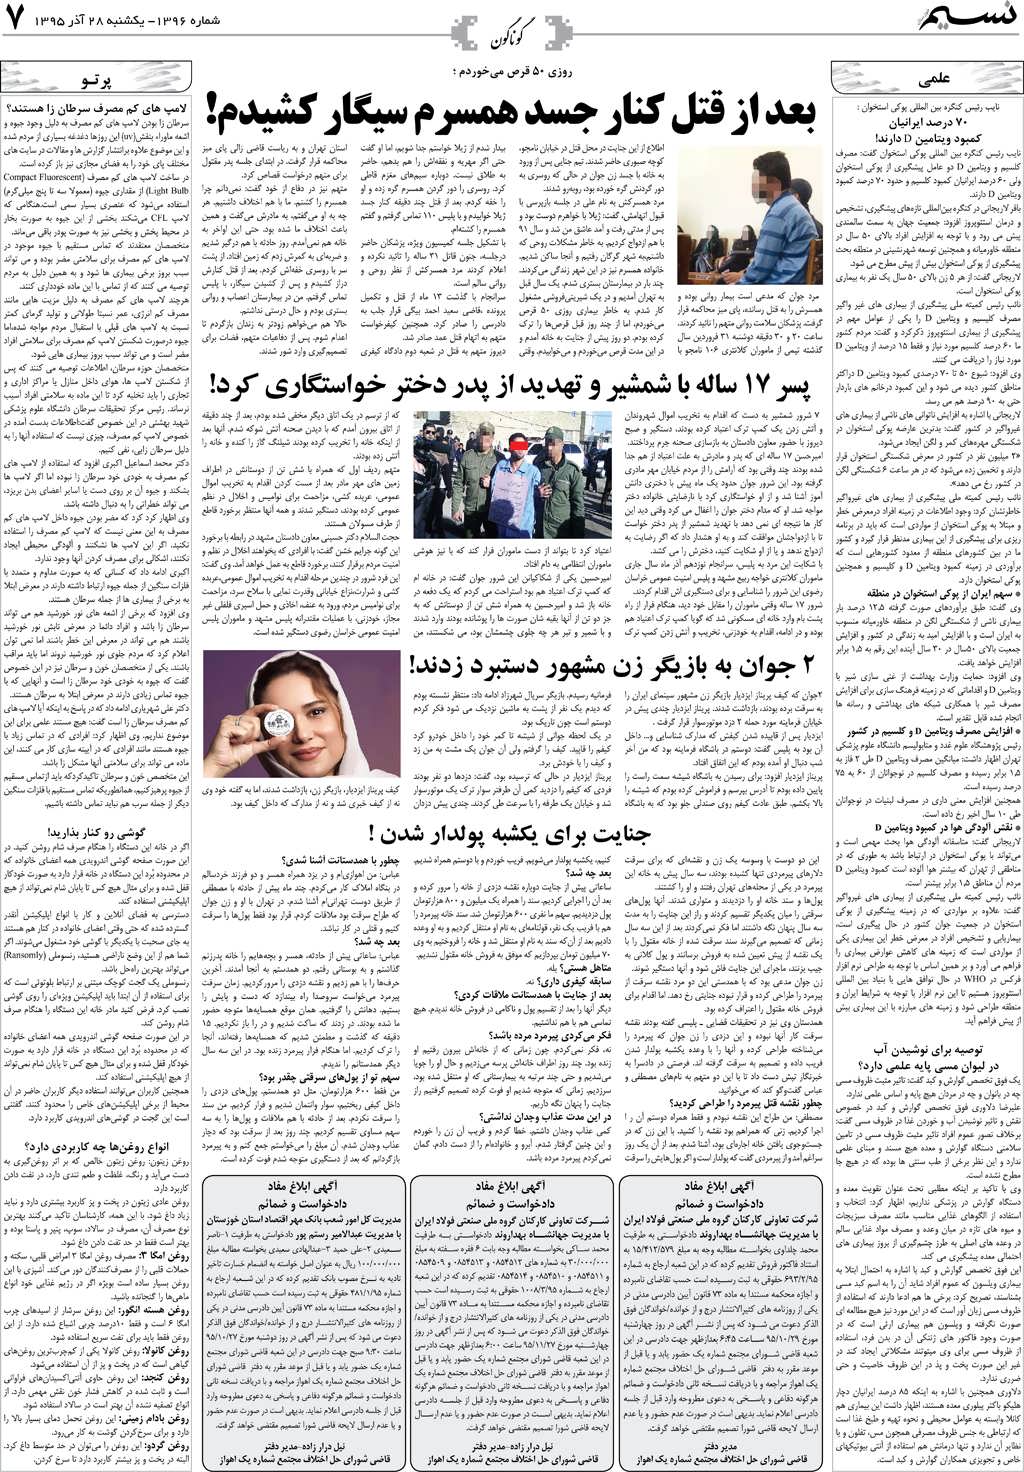 صفحه گوناگون روزنامه نسیم شماره 1396